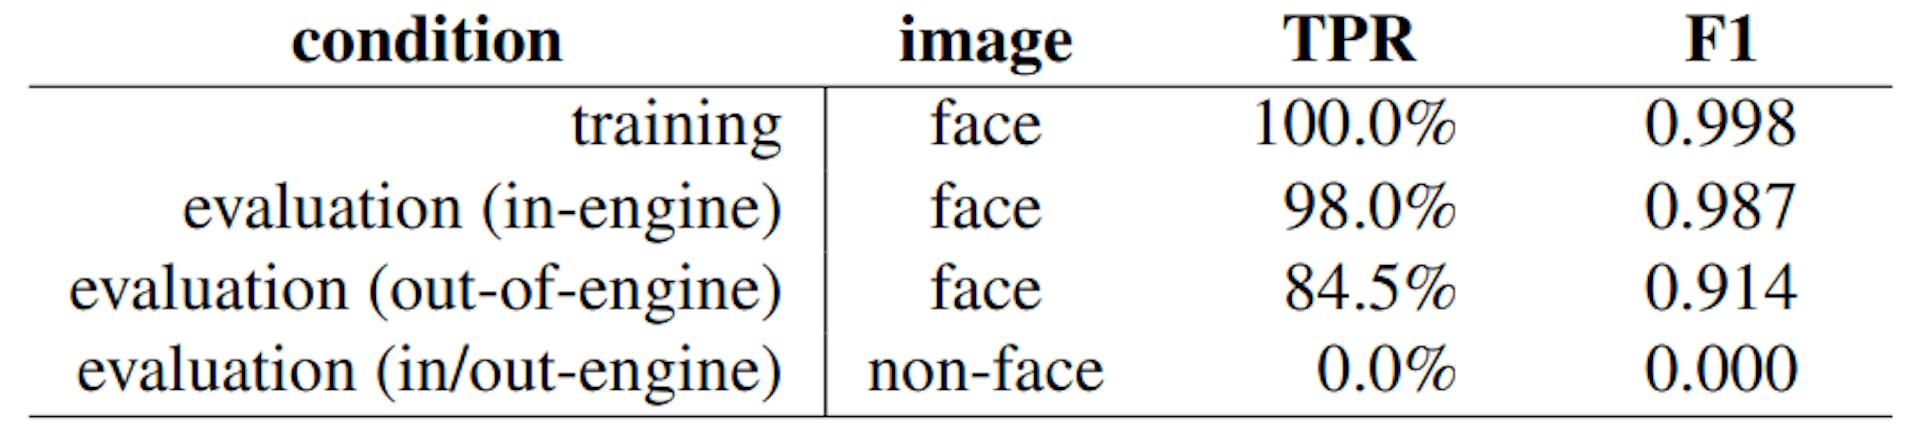 表 2. 基线训练和评估真阳性（正确分类 AI 生成的图像，在所有合成引擎 (TPR) 中取平均值）。在每种情况下，假阳性率为 0.5%（错误分类真实面部 (FPR)）。还报告了 F1 分数，定义为 2TP/(2TP + FP + FN)。TP、FP 和 FN 分别代表真阳性、假阳性和假阴性的数量。引擎内/引擎外表示图像是使用与训练时相同/不同的合成引擎创建的。